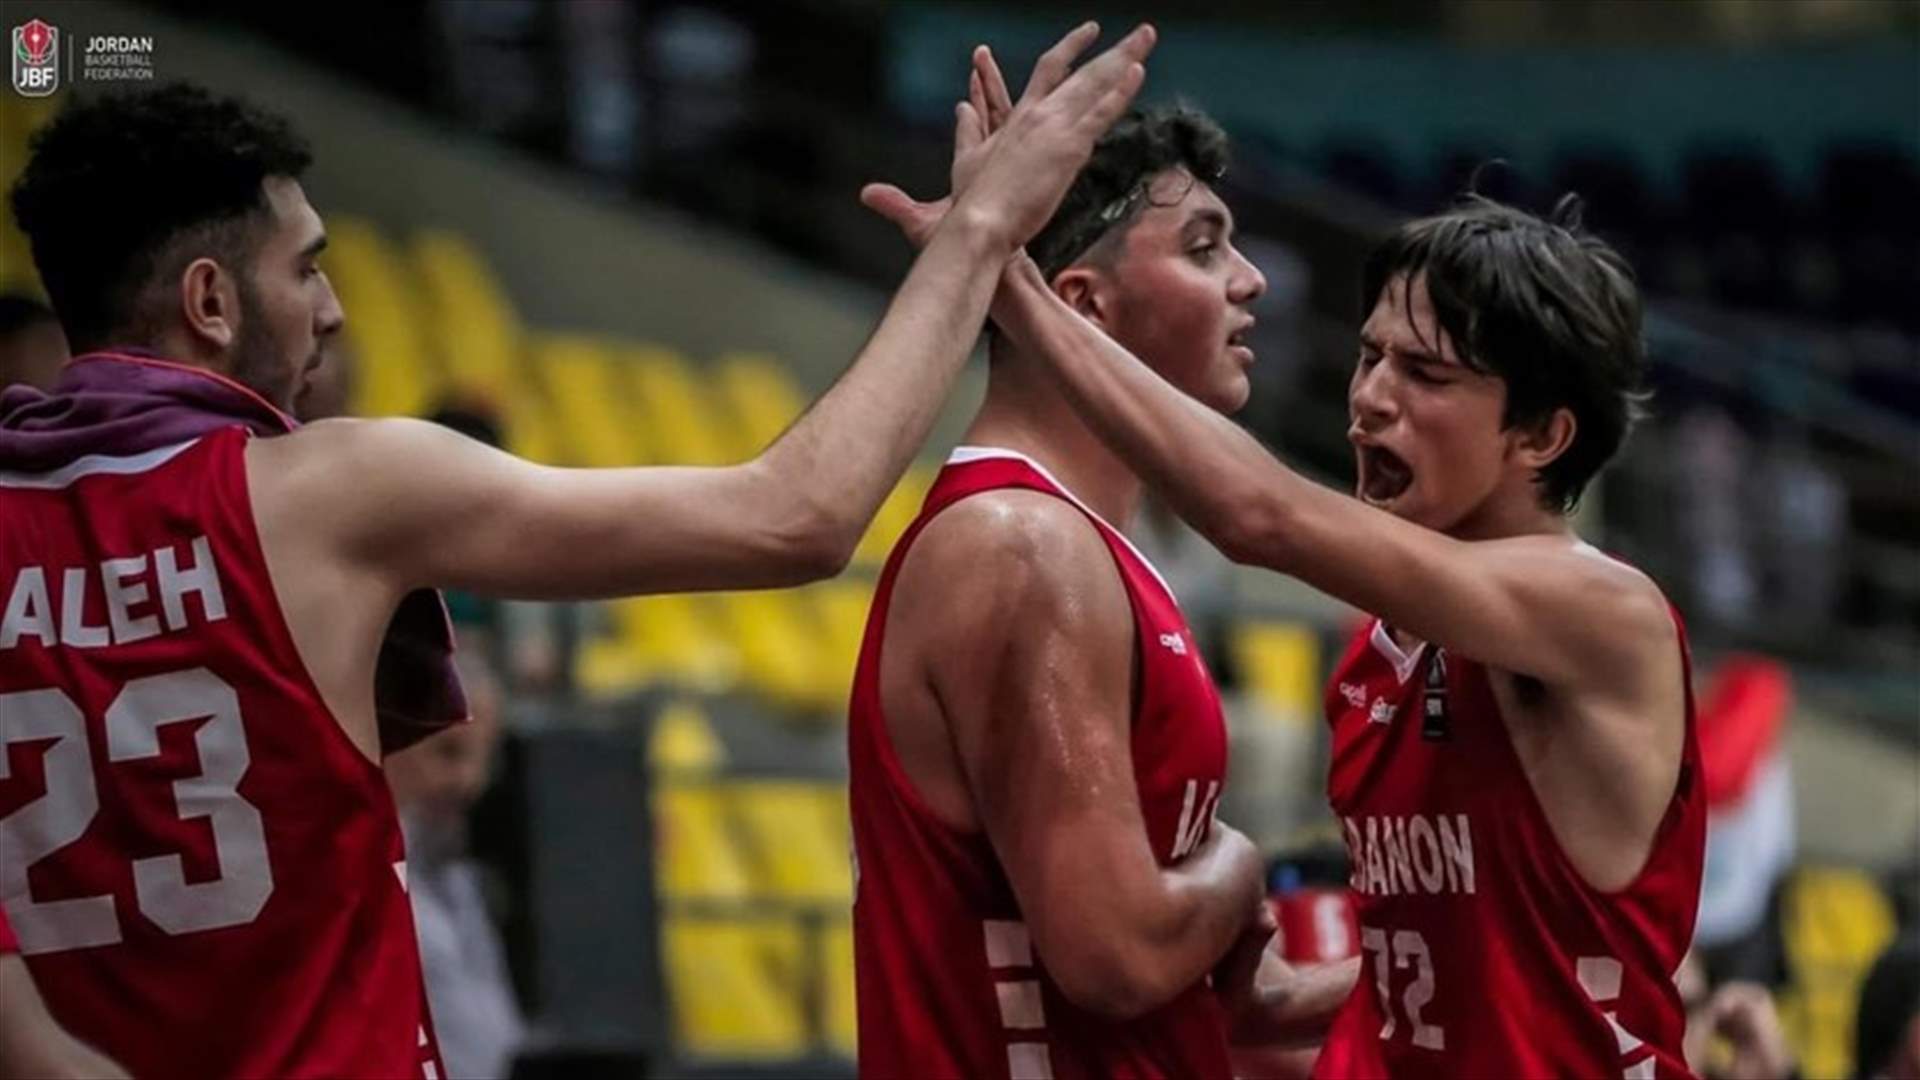 منتخب لبنان للناشئين في كرة السلة  يتاهل الى بطولة الامم الاسيوية